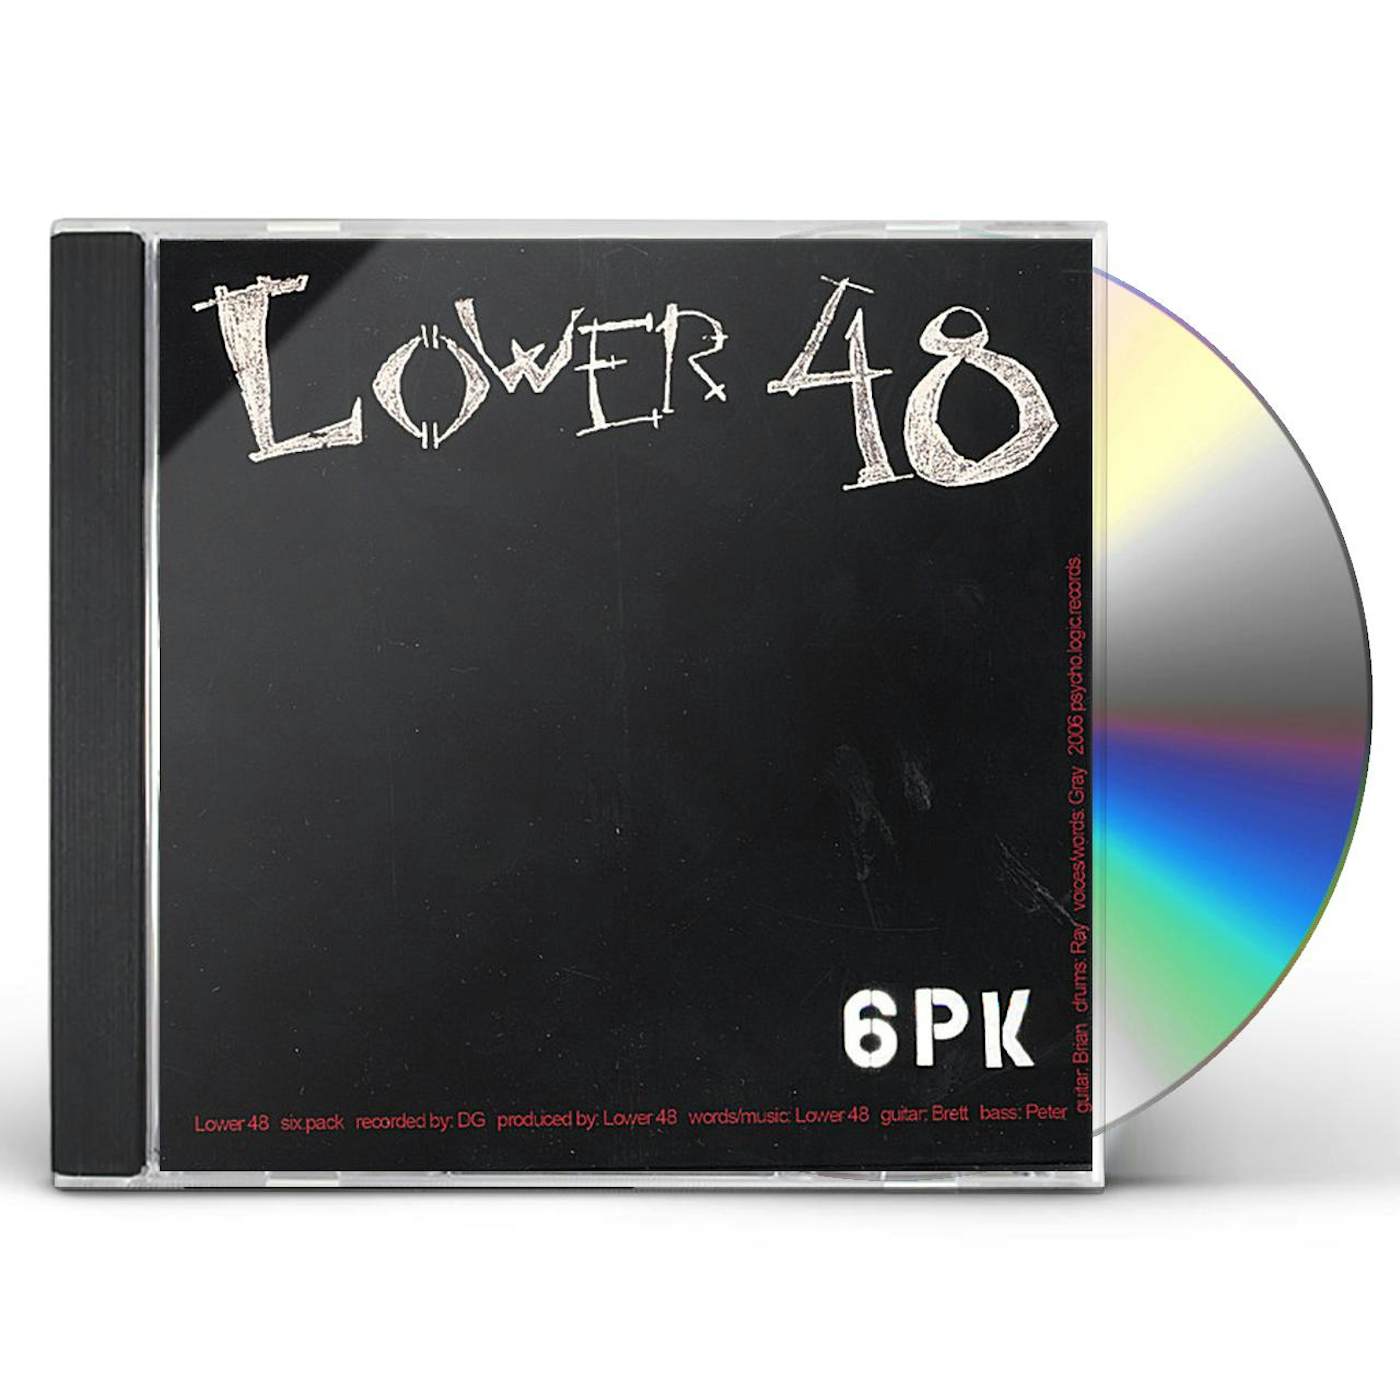 The Lower 48 6PK CD